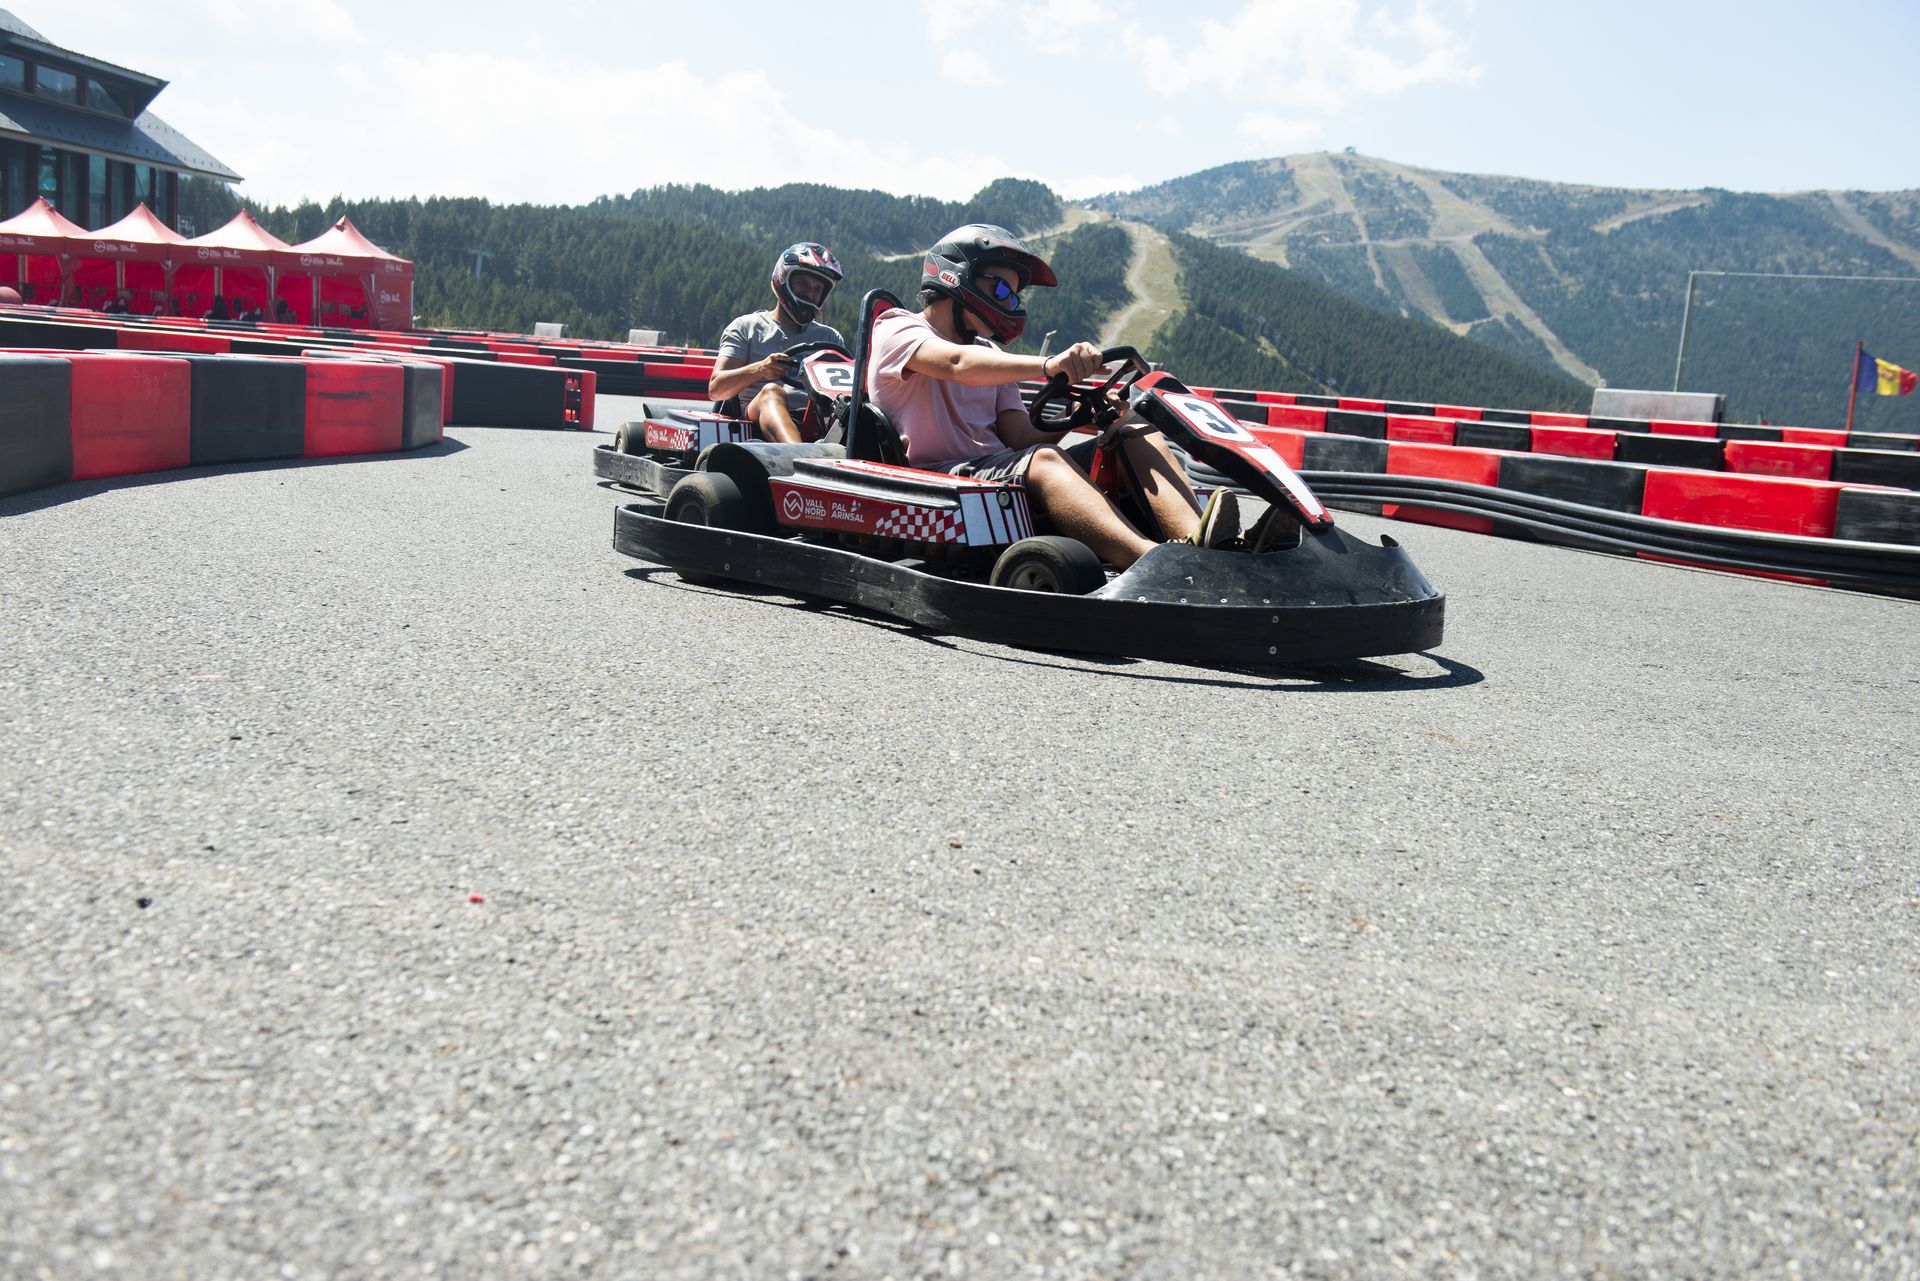 Fotografias de las actividades de verano en Pal Arinsal Vallnord Andorra